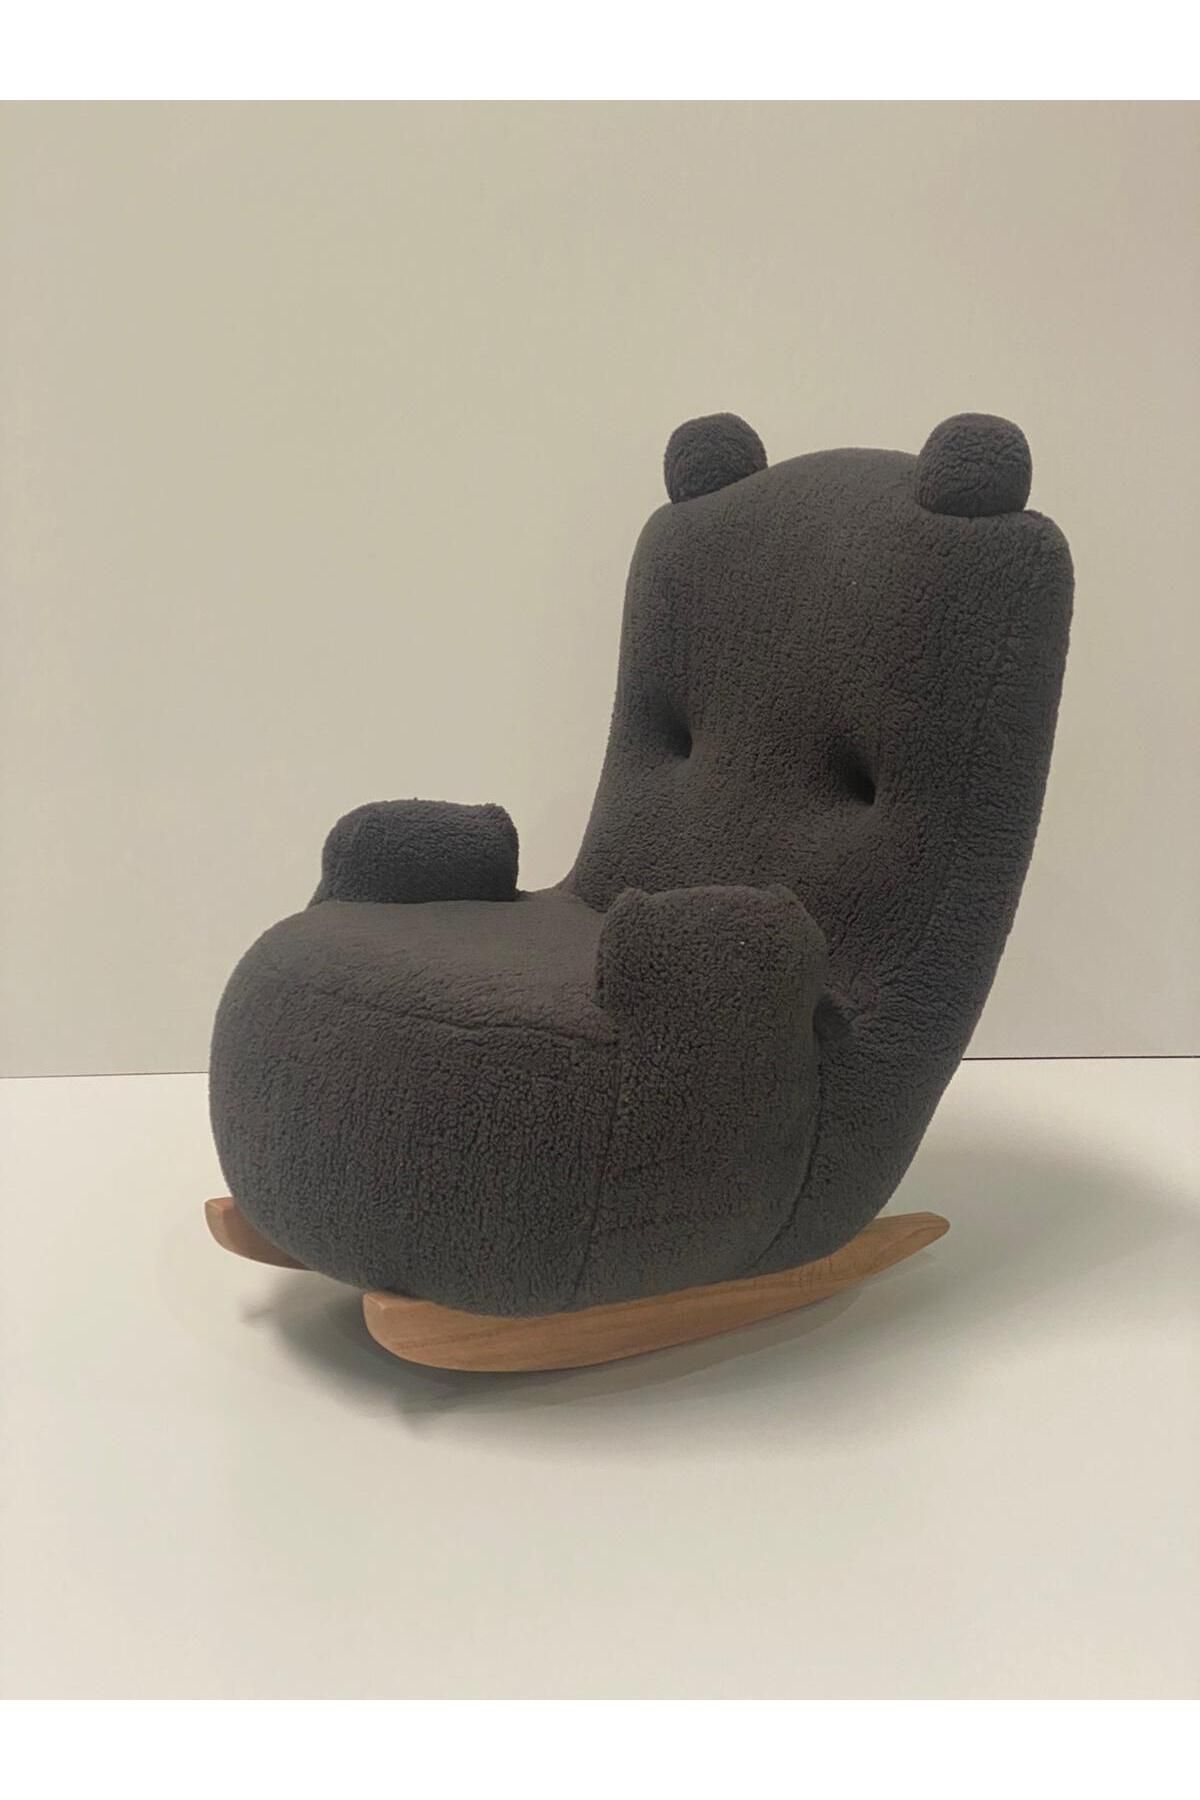 esilamobilya Sallanan Teddy Kumaşlı Ahşap Ayaklı Çocuk Bebek Koltuğu Sandalyesi (sallanır)